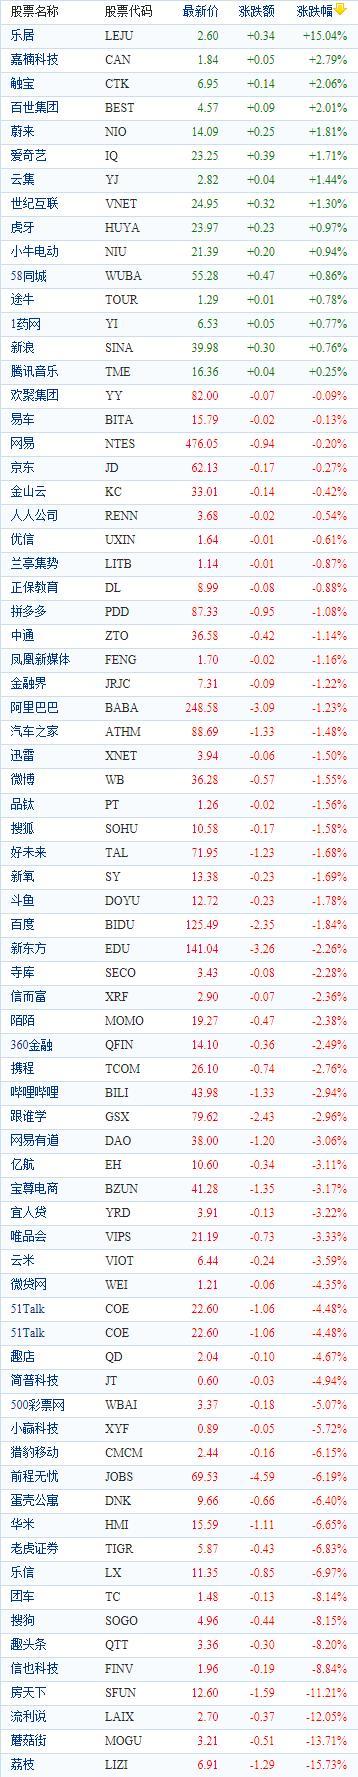 中国概念股周二收盘多数下跌 荔枝重挫近16%